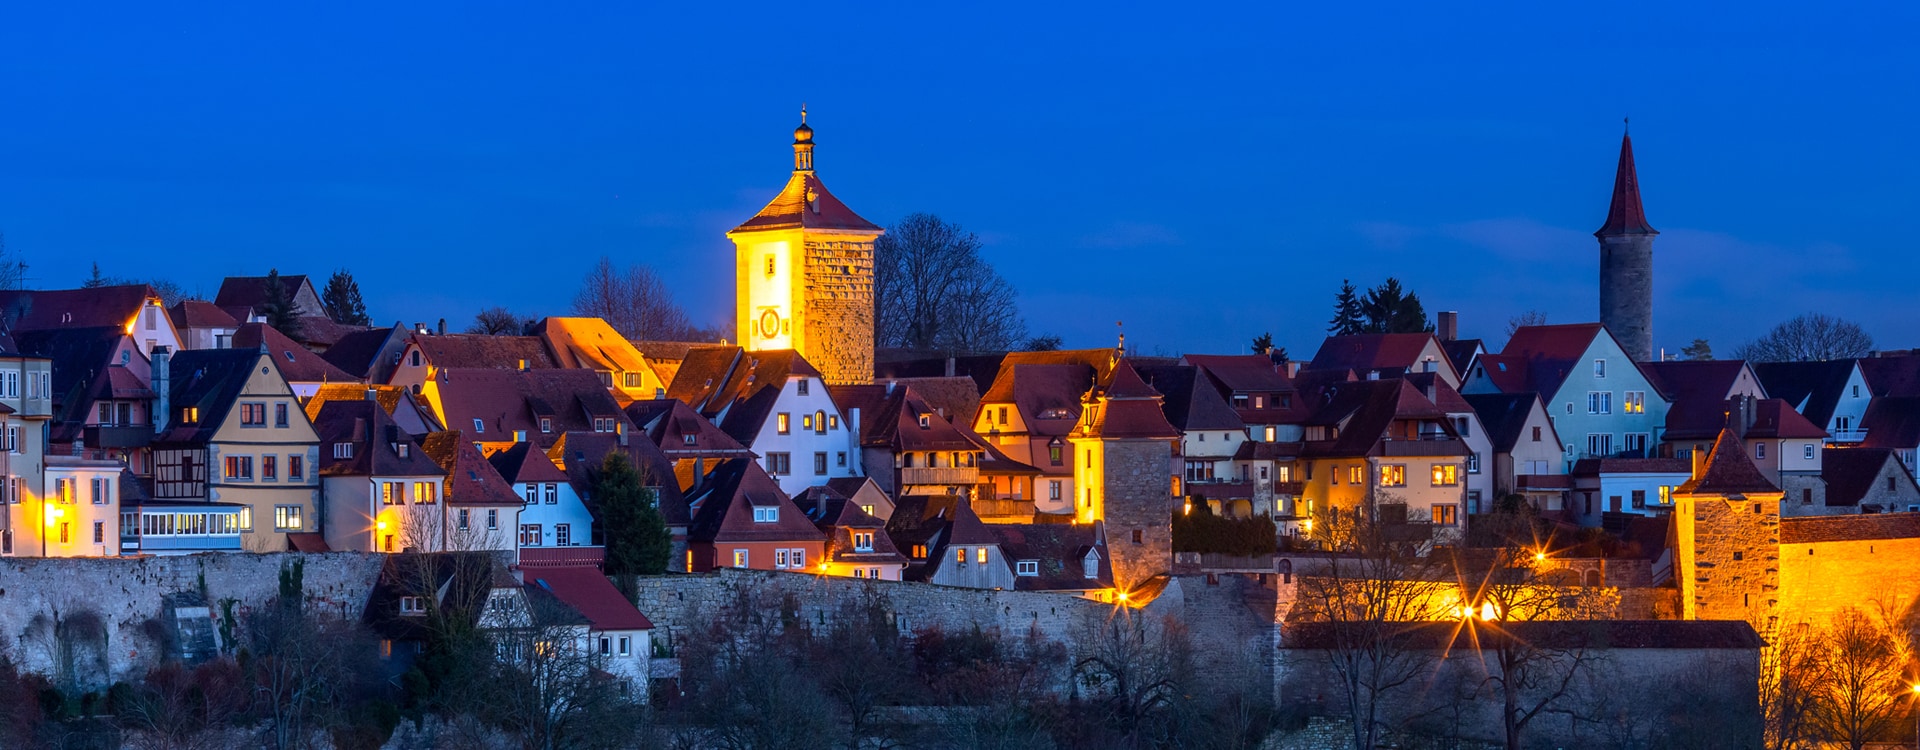 Rothenburg o. d. T.  bei Nacht 